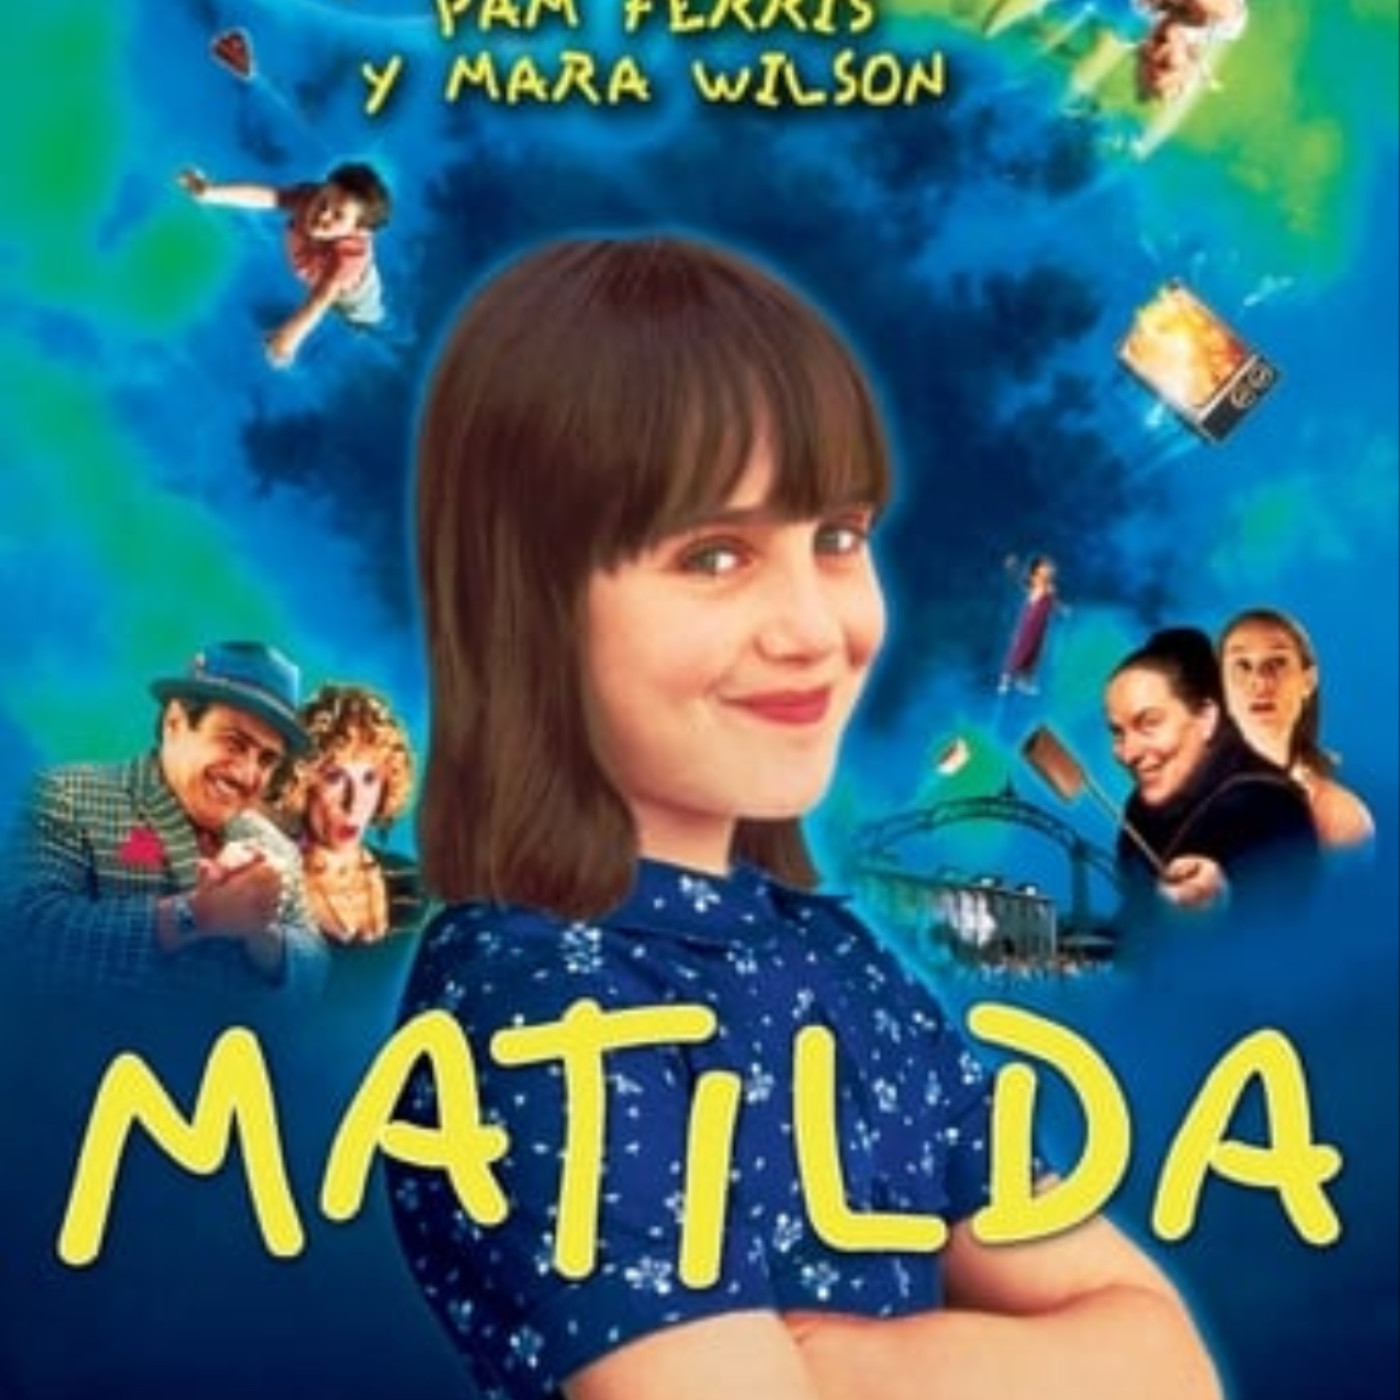 Ver Matilda 1996 online gratis en español y latino | Podcast on SoundOn